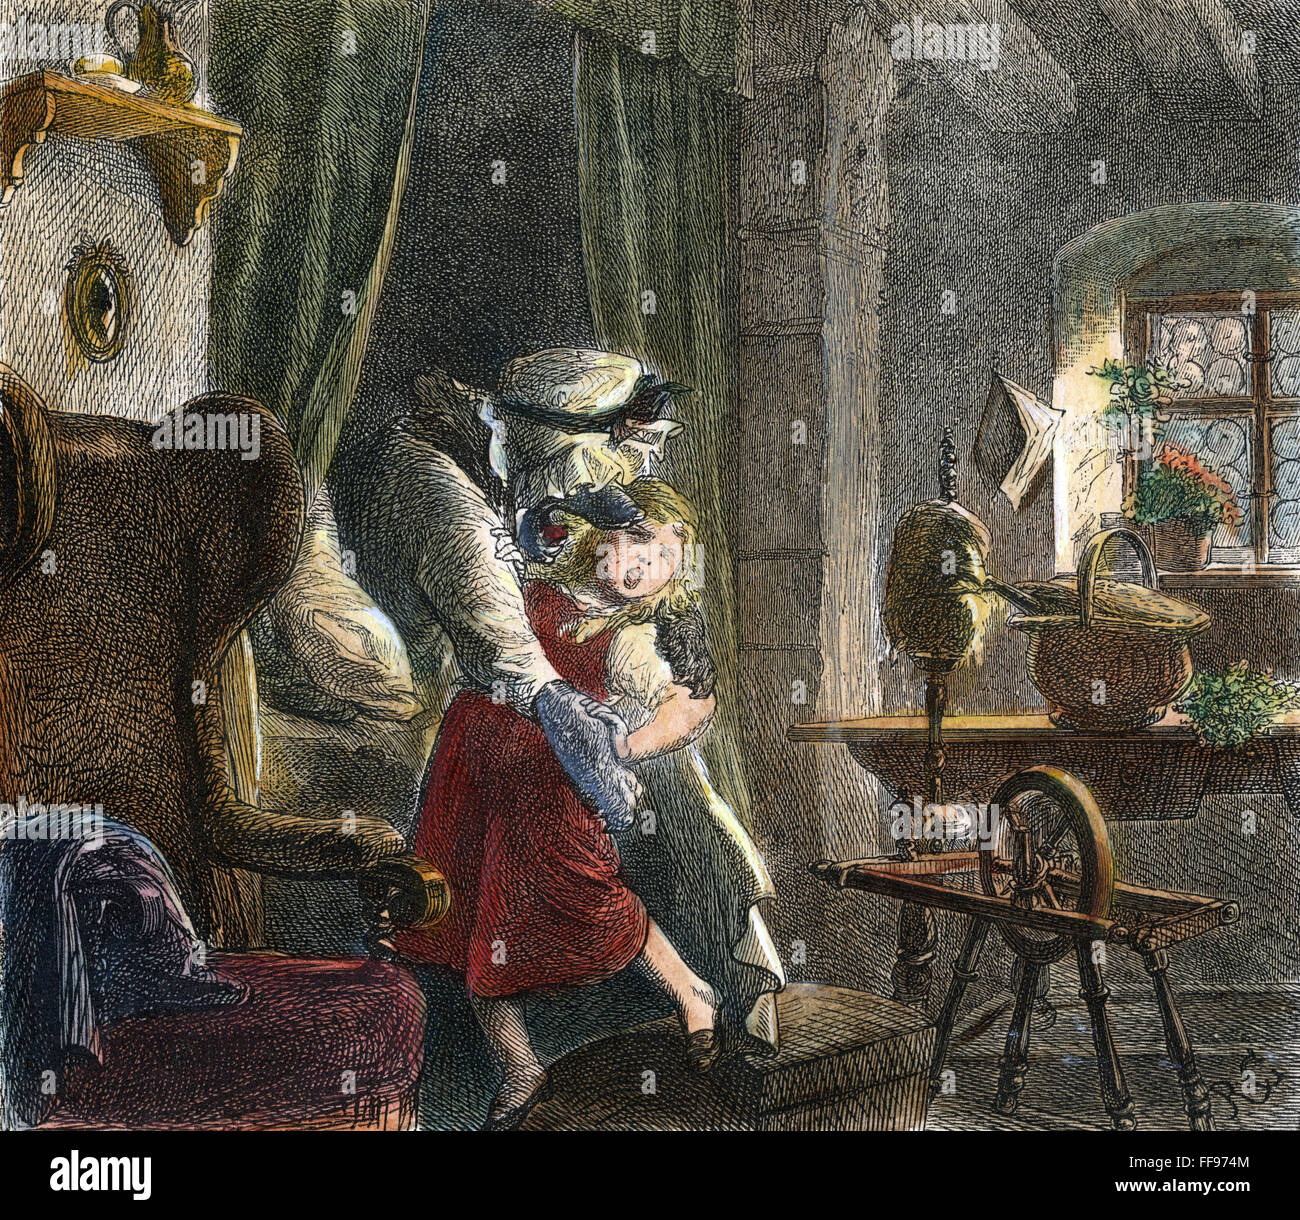 LITTLE RED RIDING HOOD. /nThe Wolf vorbereiten, Little Red Riding Hood zu verschlingen. Illustration aus 19. Jahrhundert deutsche Ausgabe des Märchens. Stockfoto